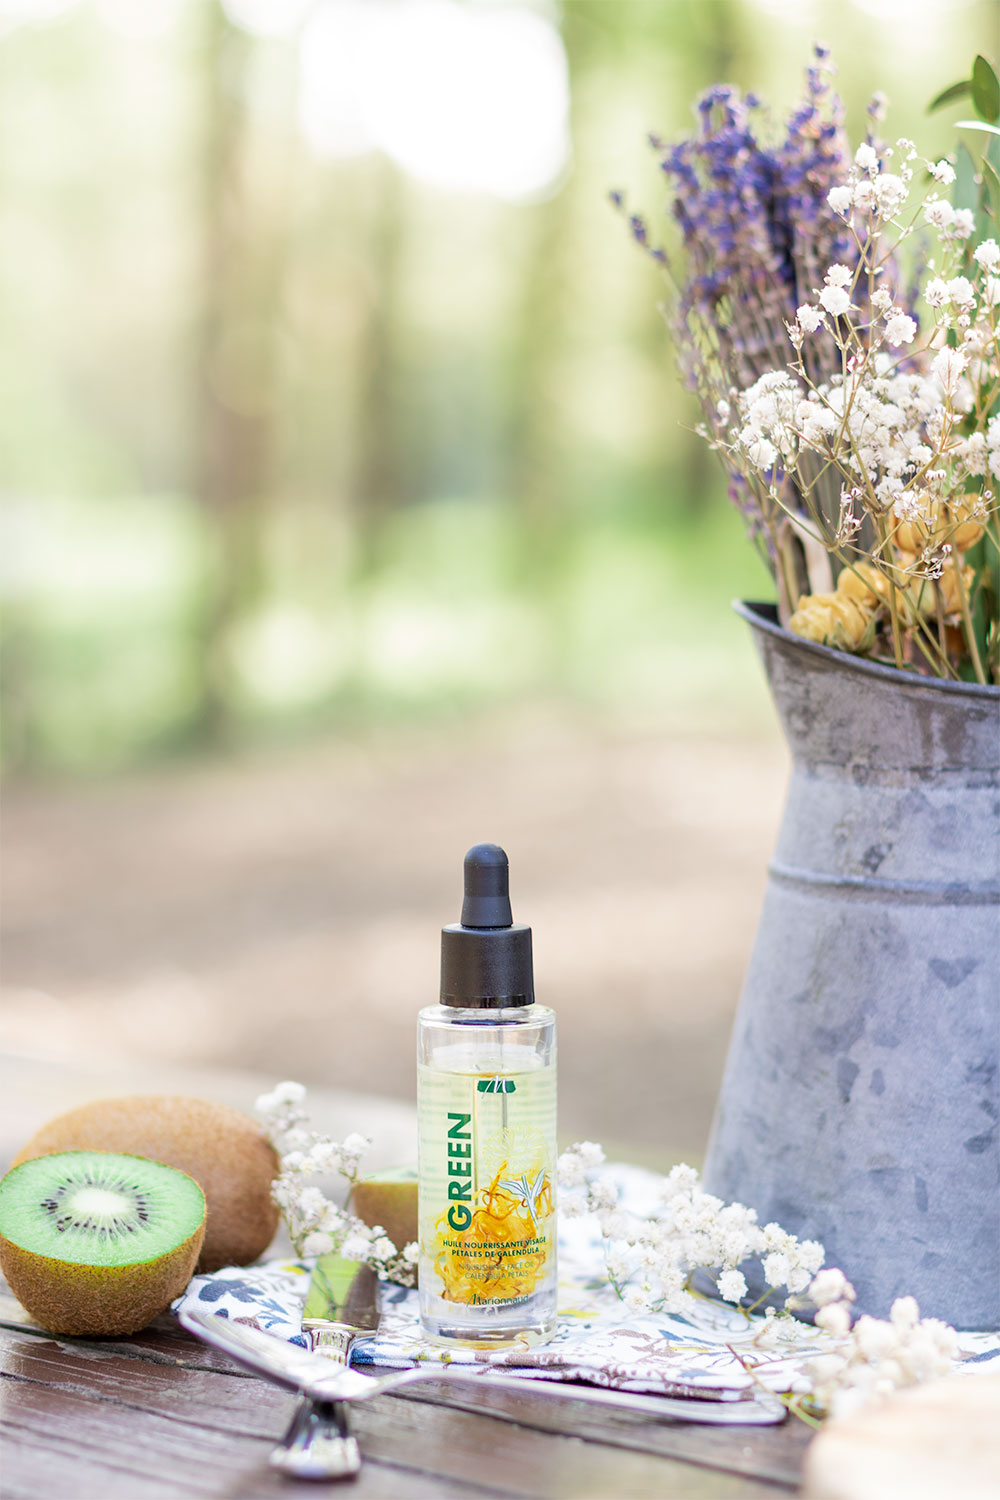 L'huile nourrissante visage de la gamme Green de Marionnaud posé sur une table en bois entourée de kiwis et de fleurs séchées